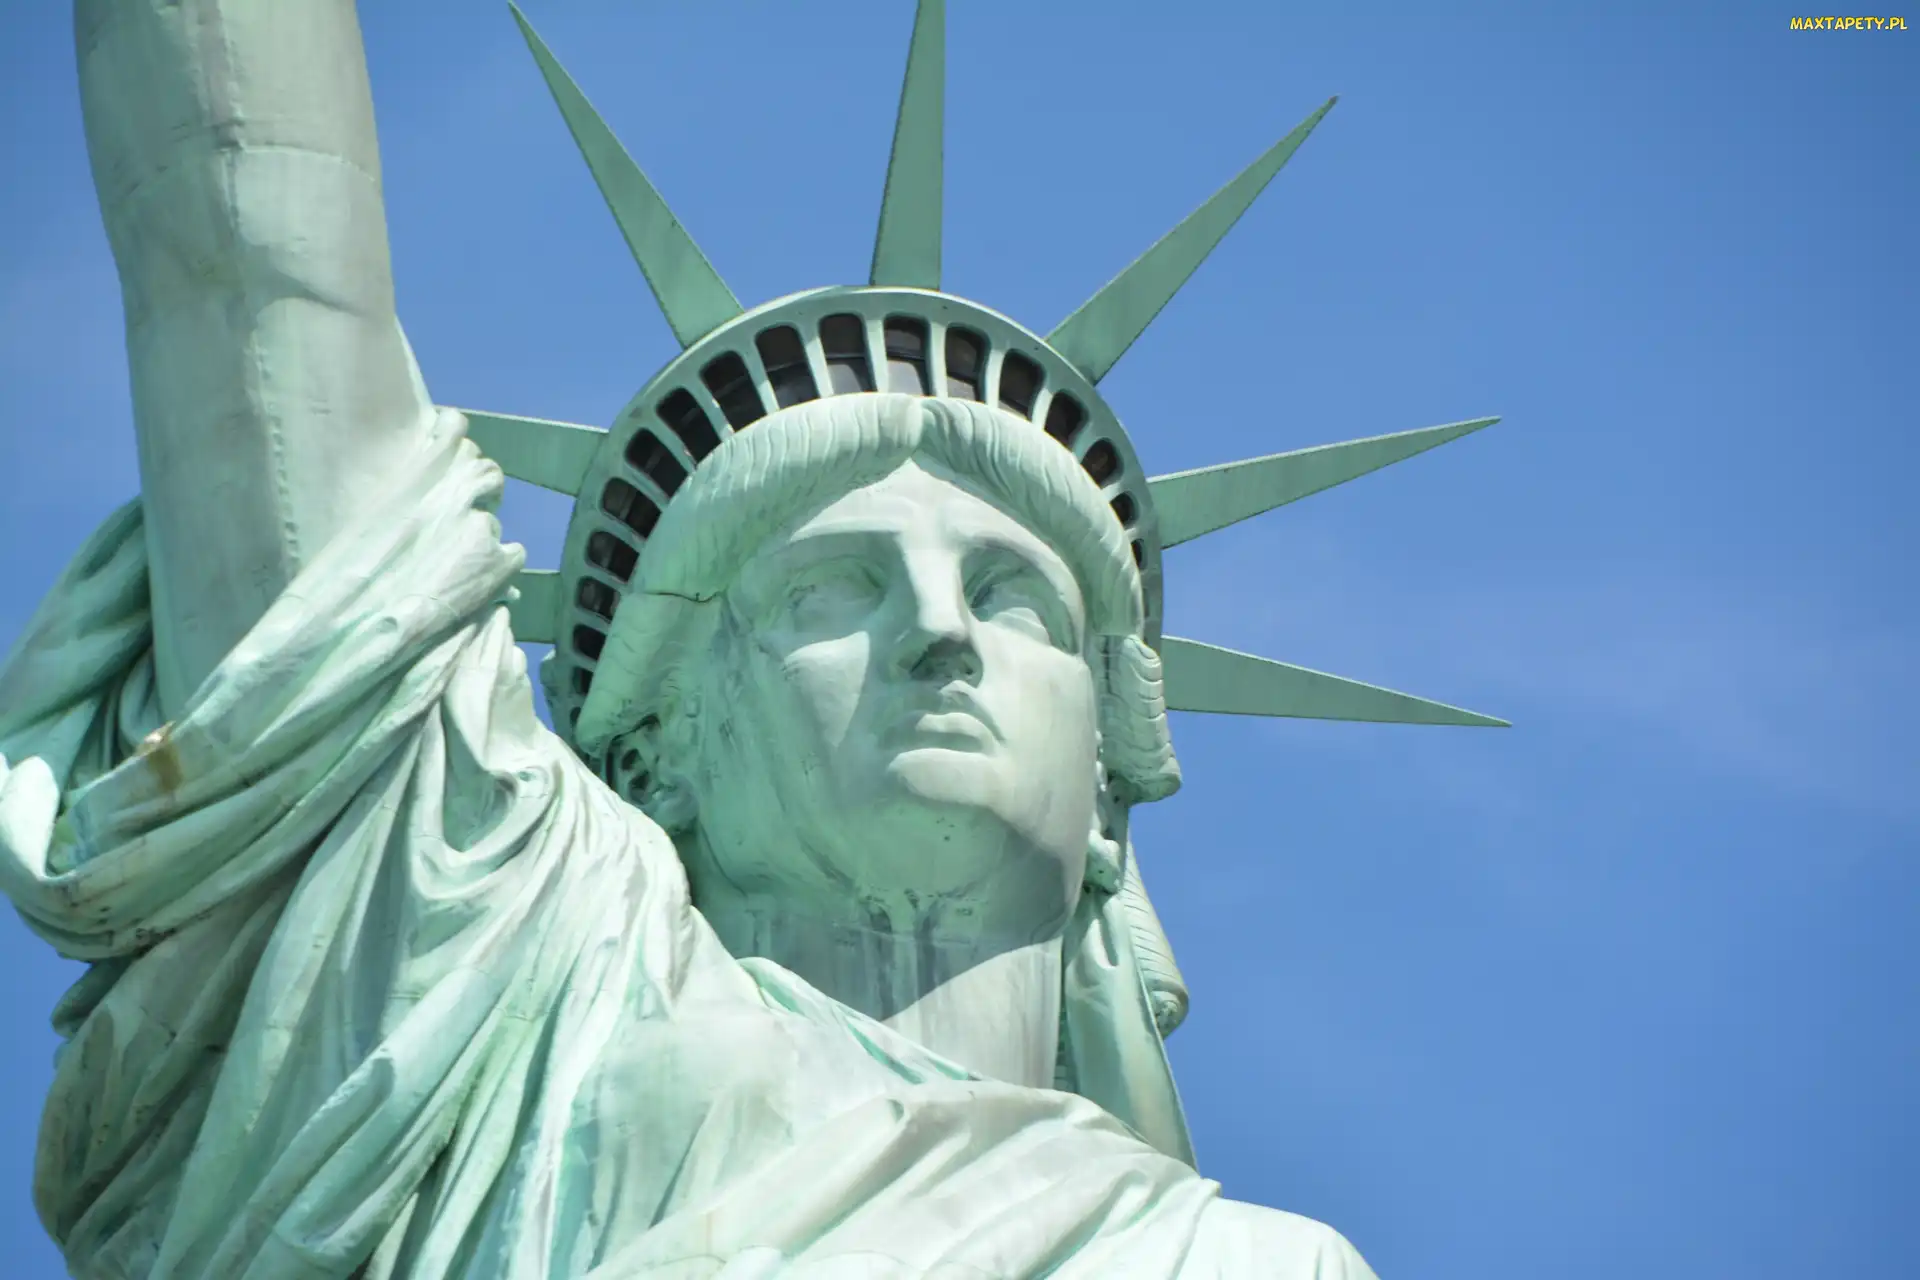 Posąg, Stany Zjednoczone, Wyspa Liberty, Nowy Jork, Statua Wolności